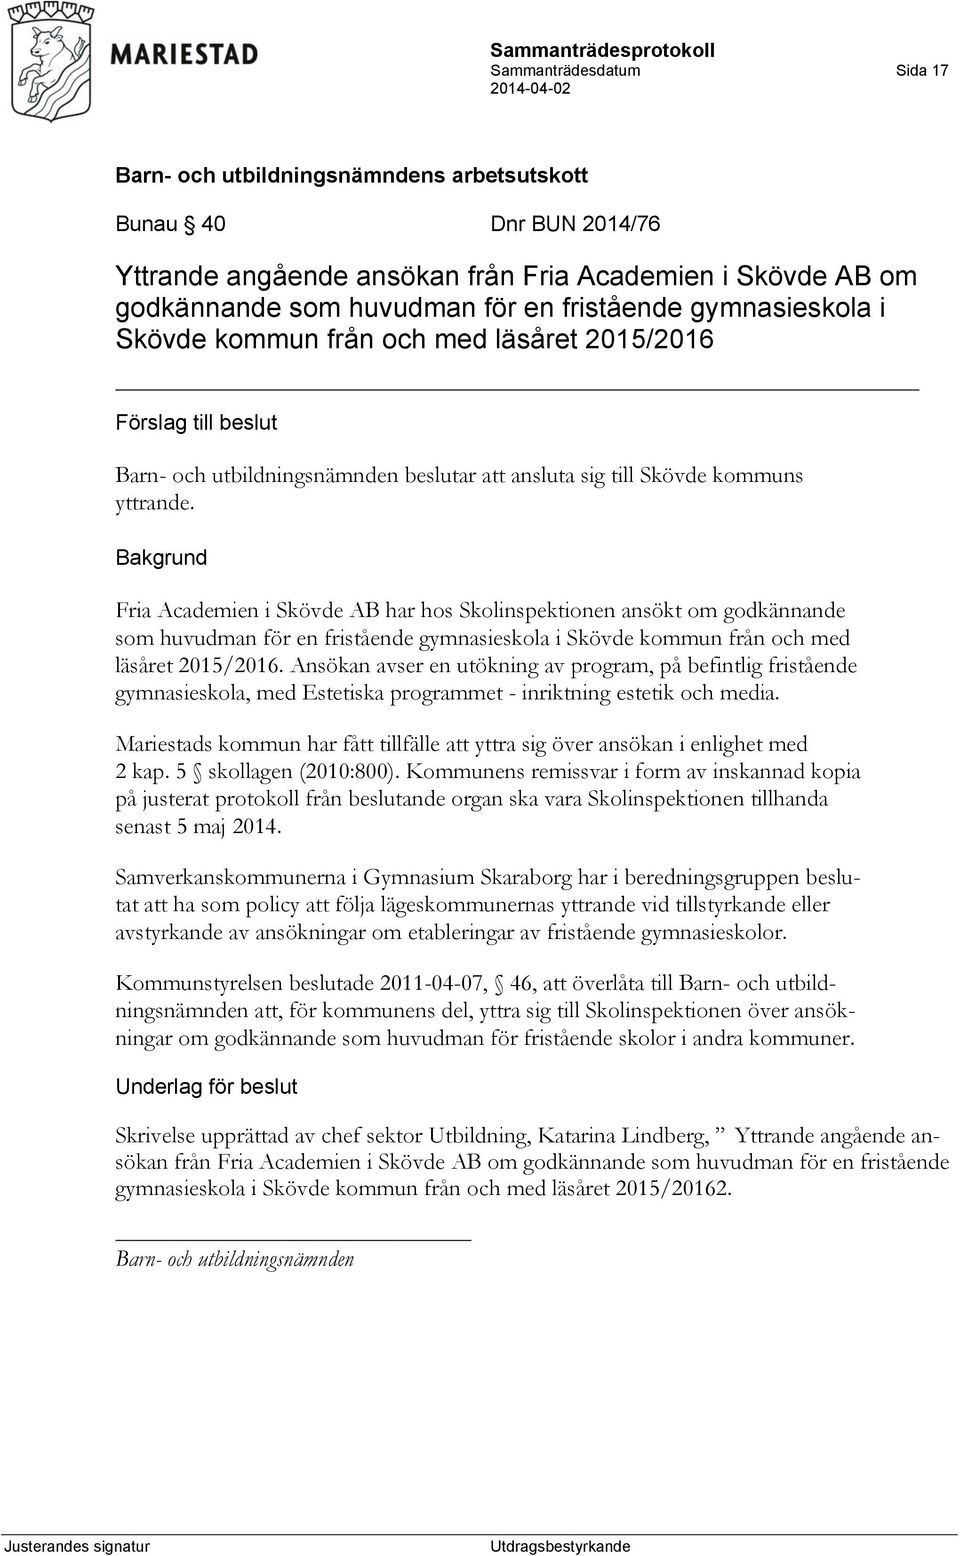 Fria Academien i Skövde AB har hos Skolinspektionen ansökt om godkännande som huvudman för en fristående gymnasieskola i Skövde kommun från och med läsåret 2015/2016.